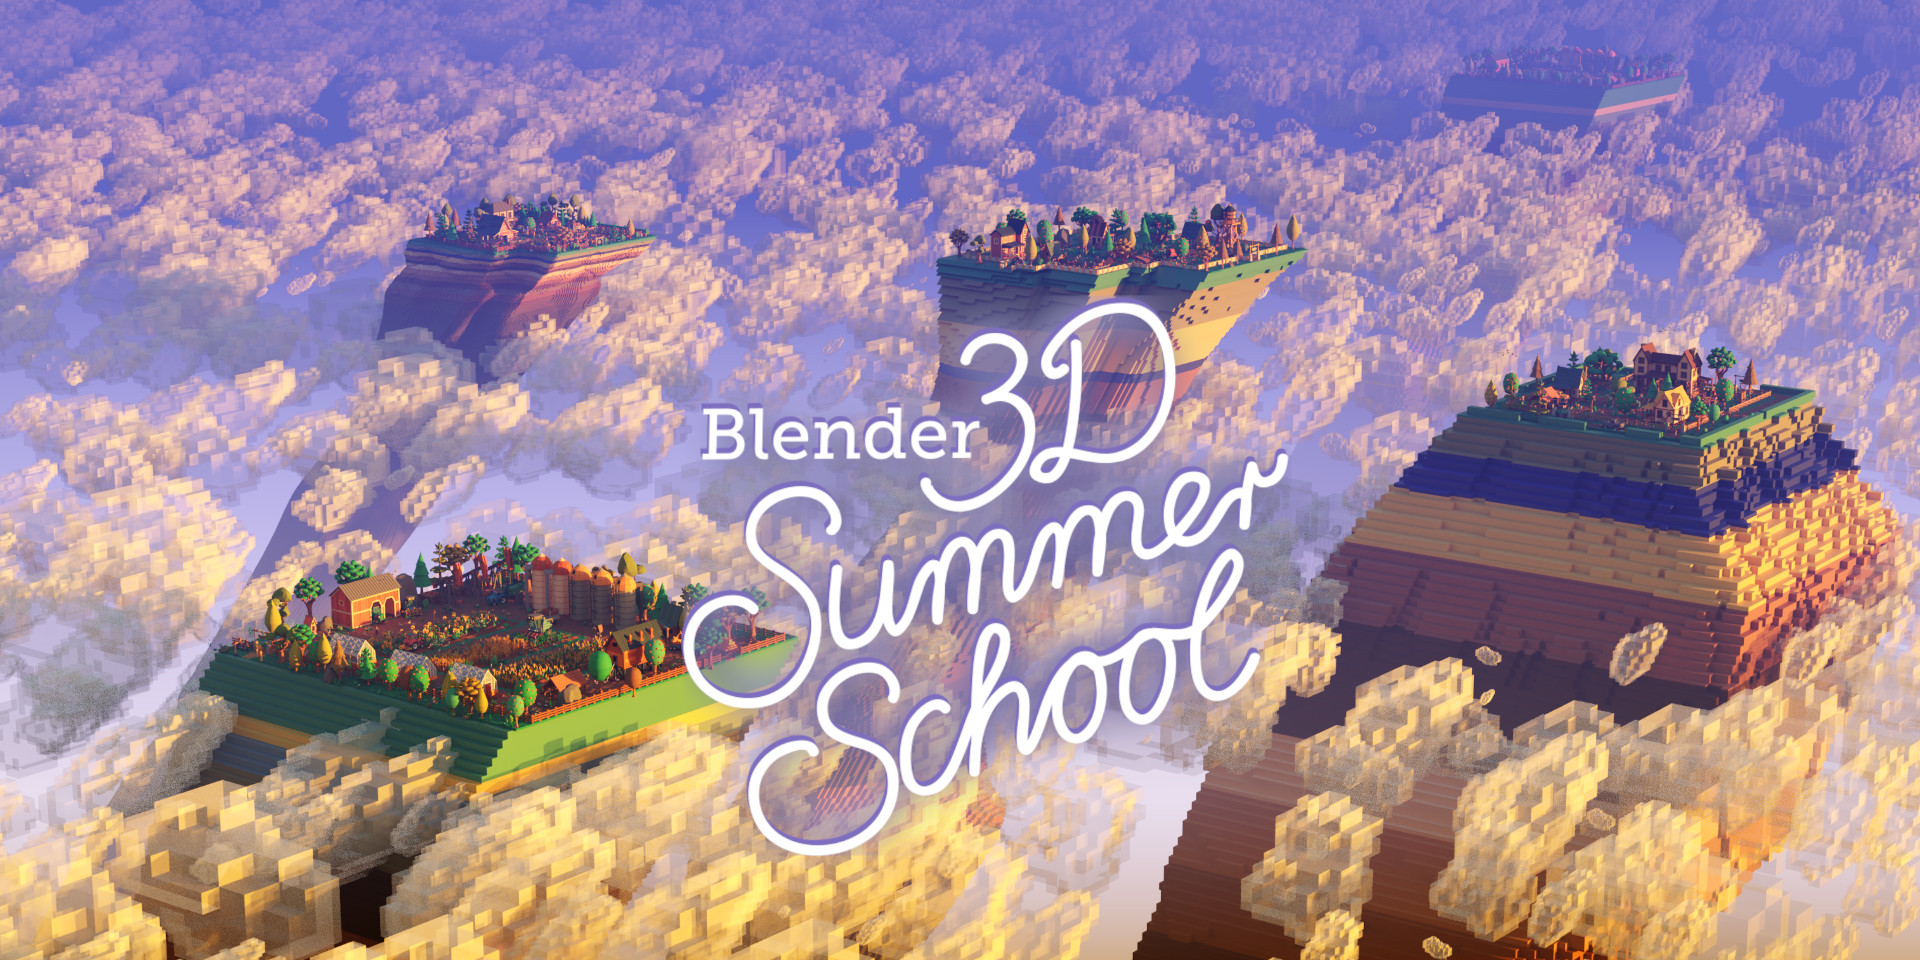 (c) Blender3dschool.de